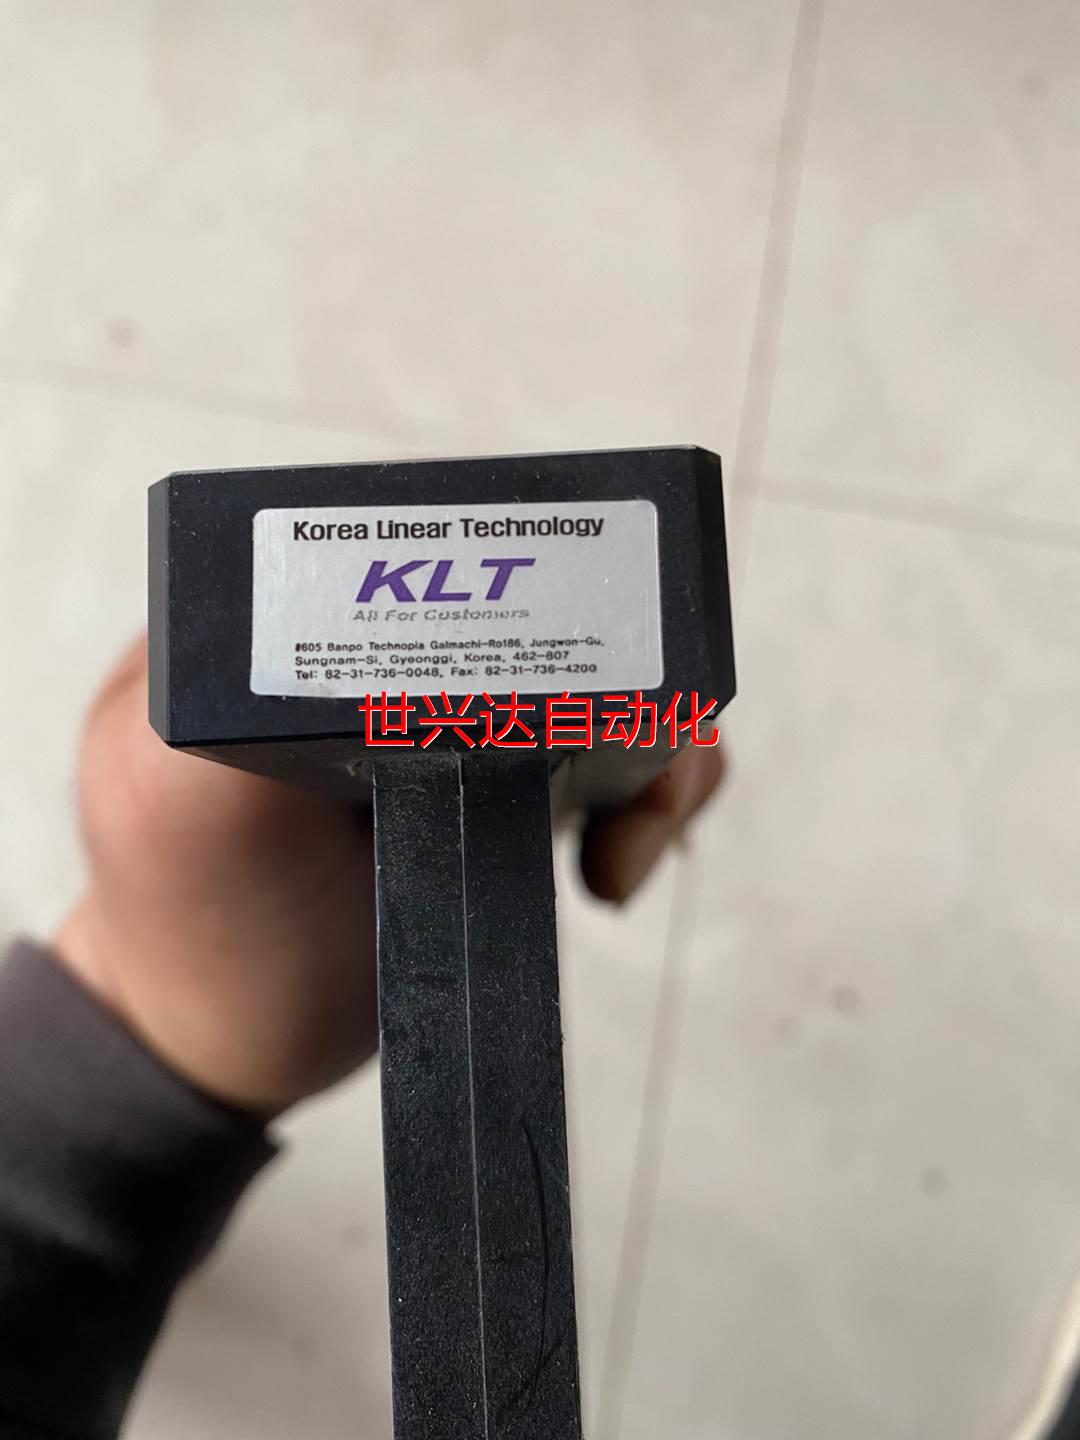 非实价-韩国KLT设备配件 不太懂 看着像加热的 实物图一个议价